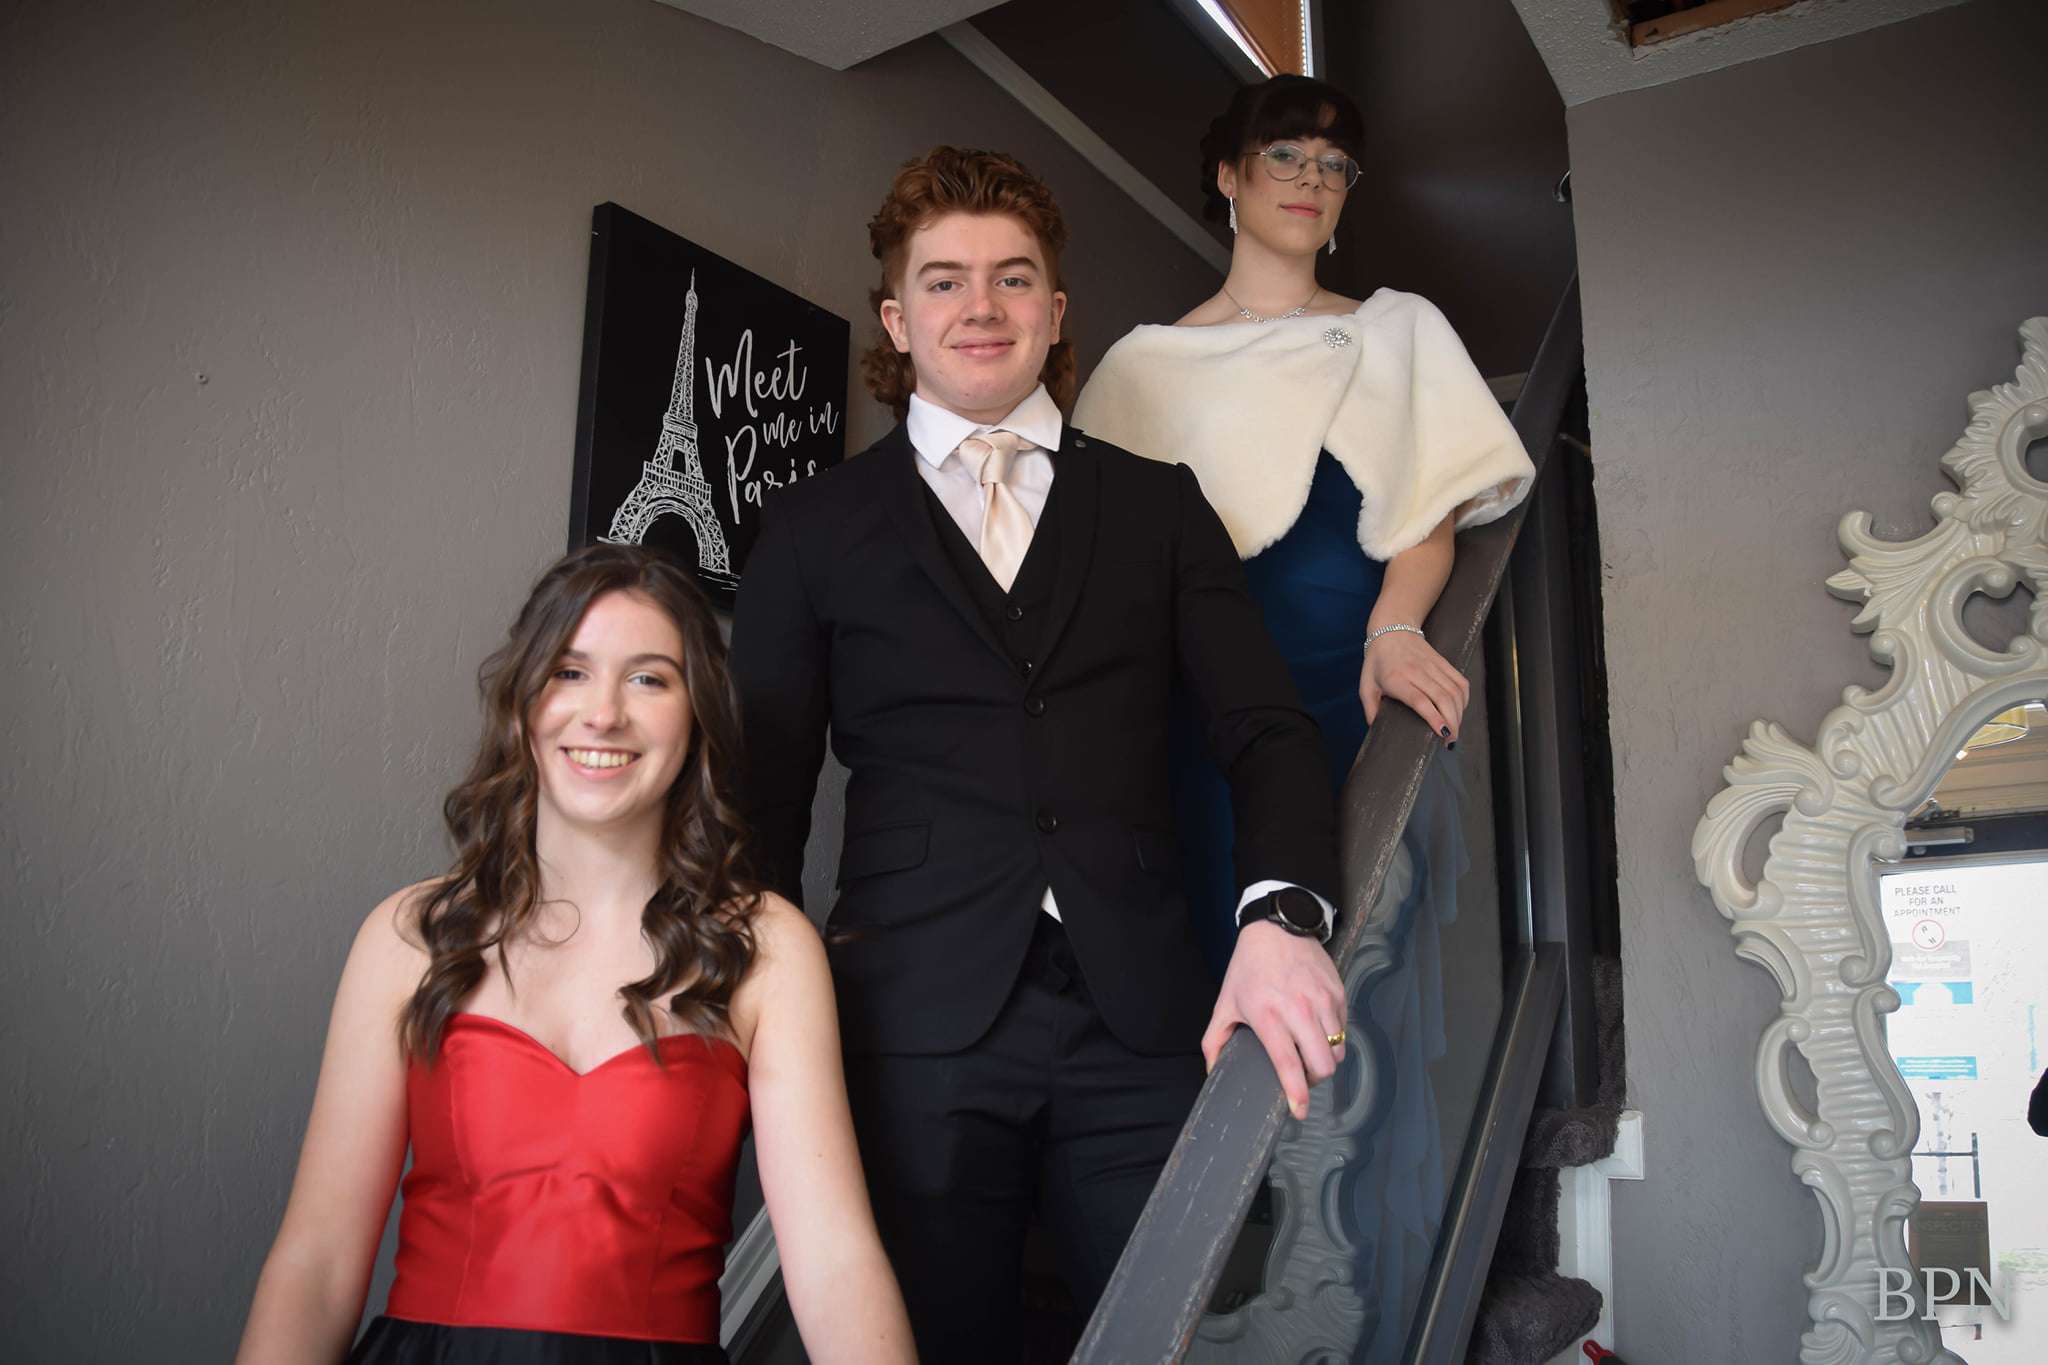 Les trois candidats, habillés aux neufs, debout sur les escaliers.